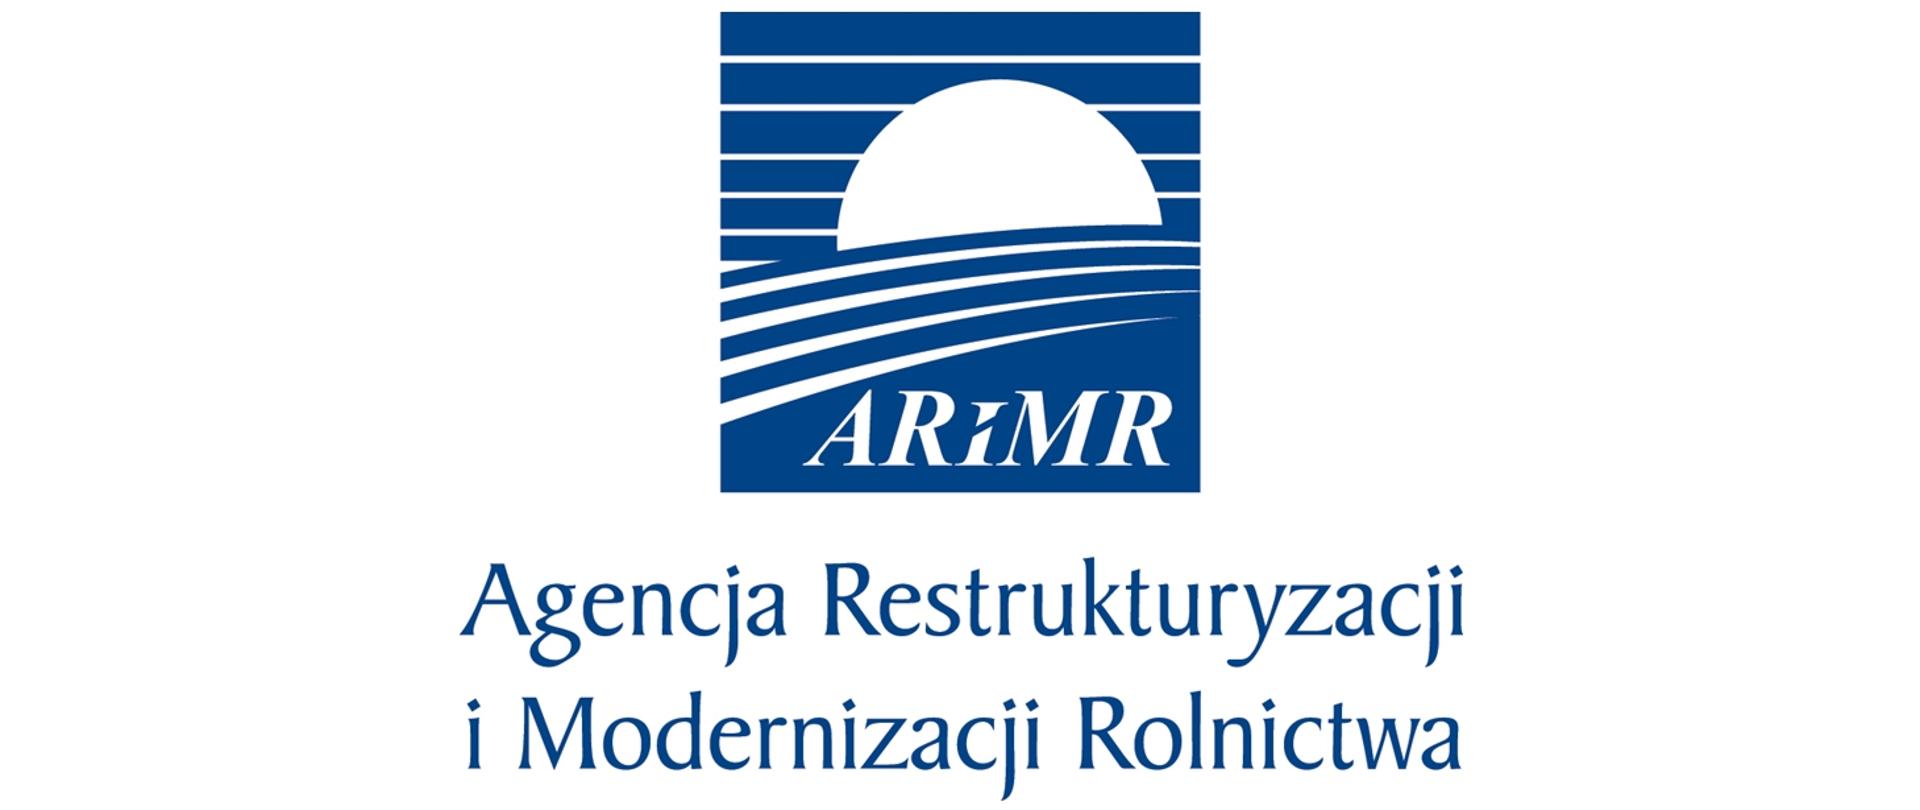 Agencja Restrukturyzacji i Modernizacji Rolnictwa - niebieskie logo ARiMR na białym tle